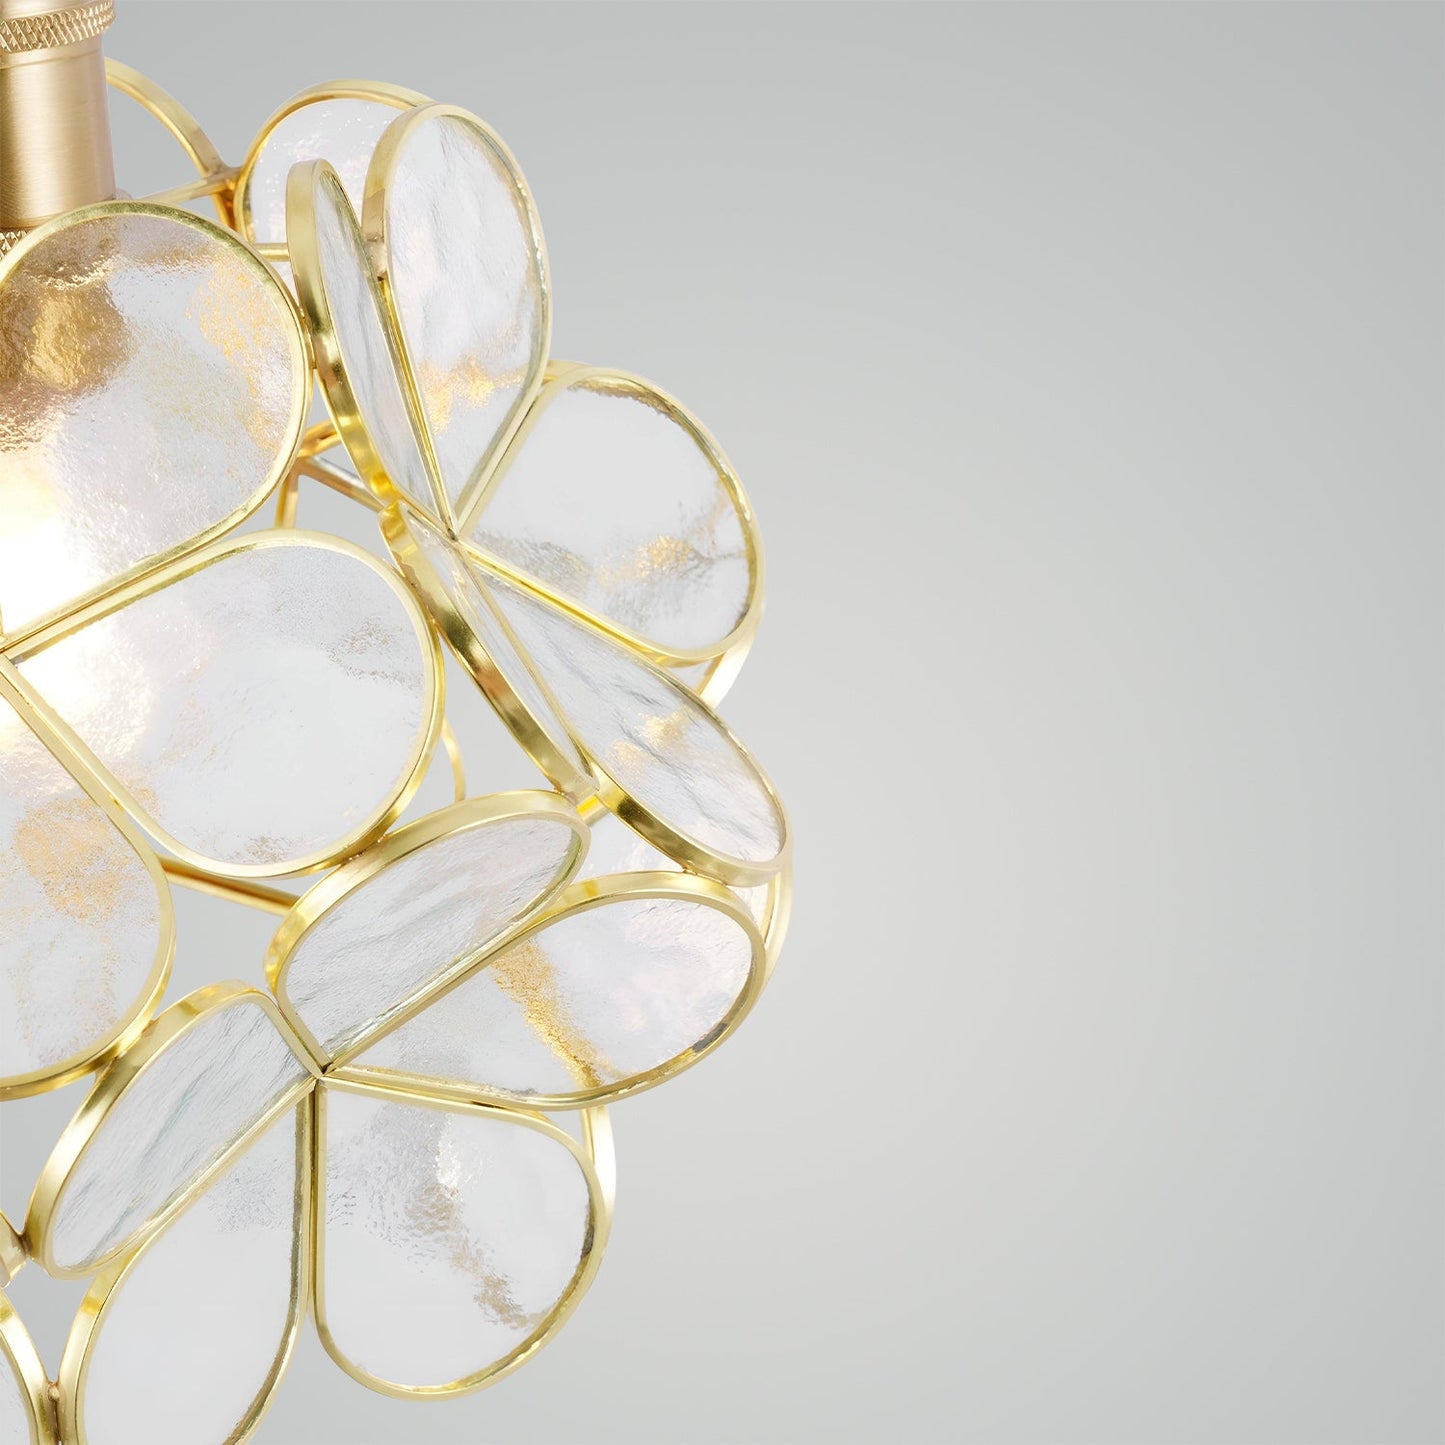 Bohemian - Golden Blossom Orb Pendant Light